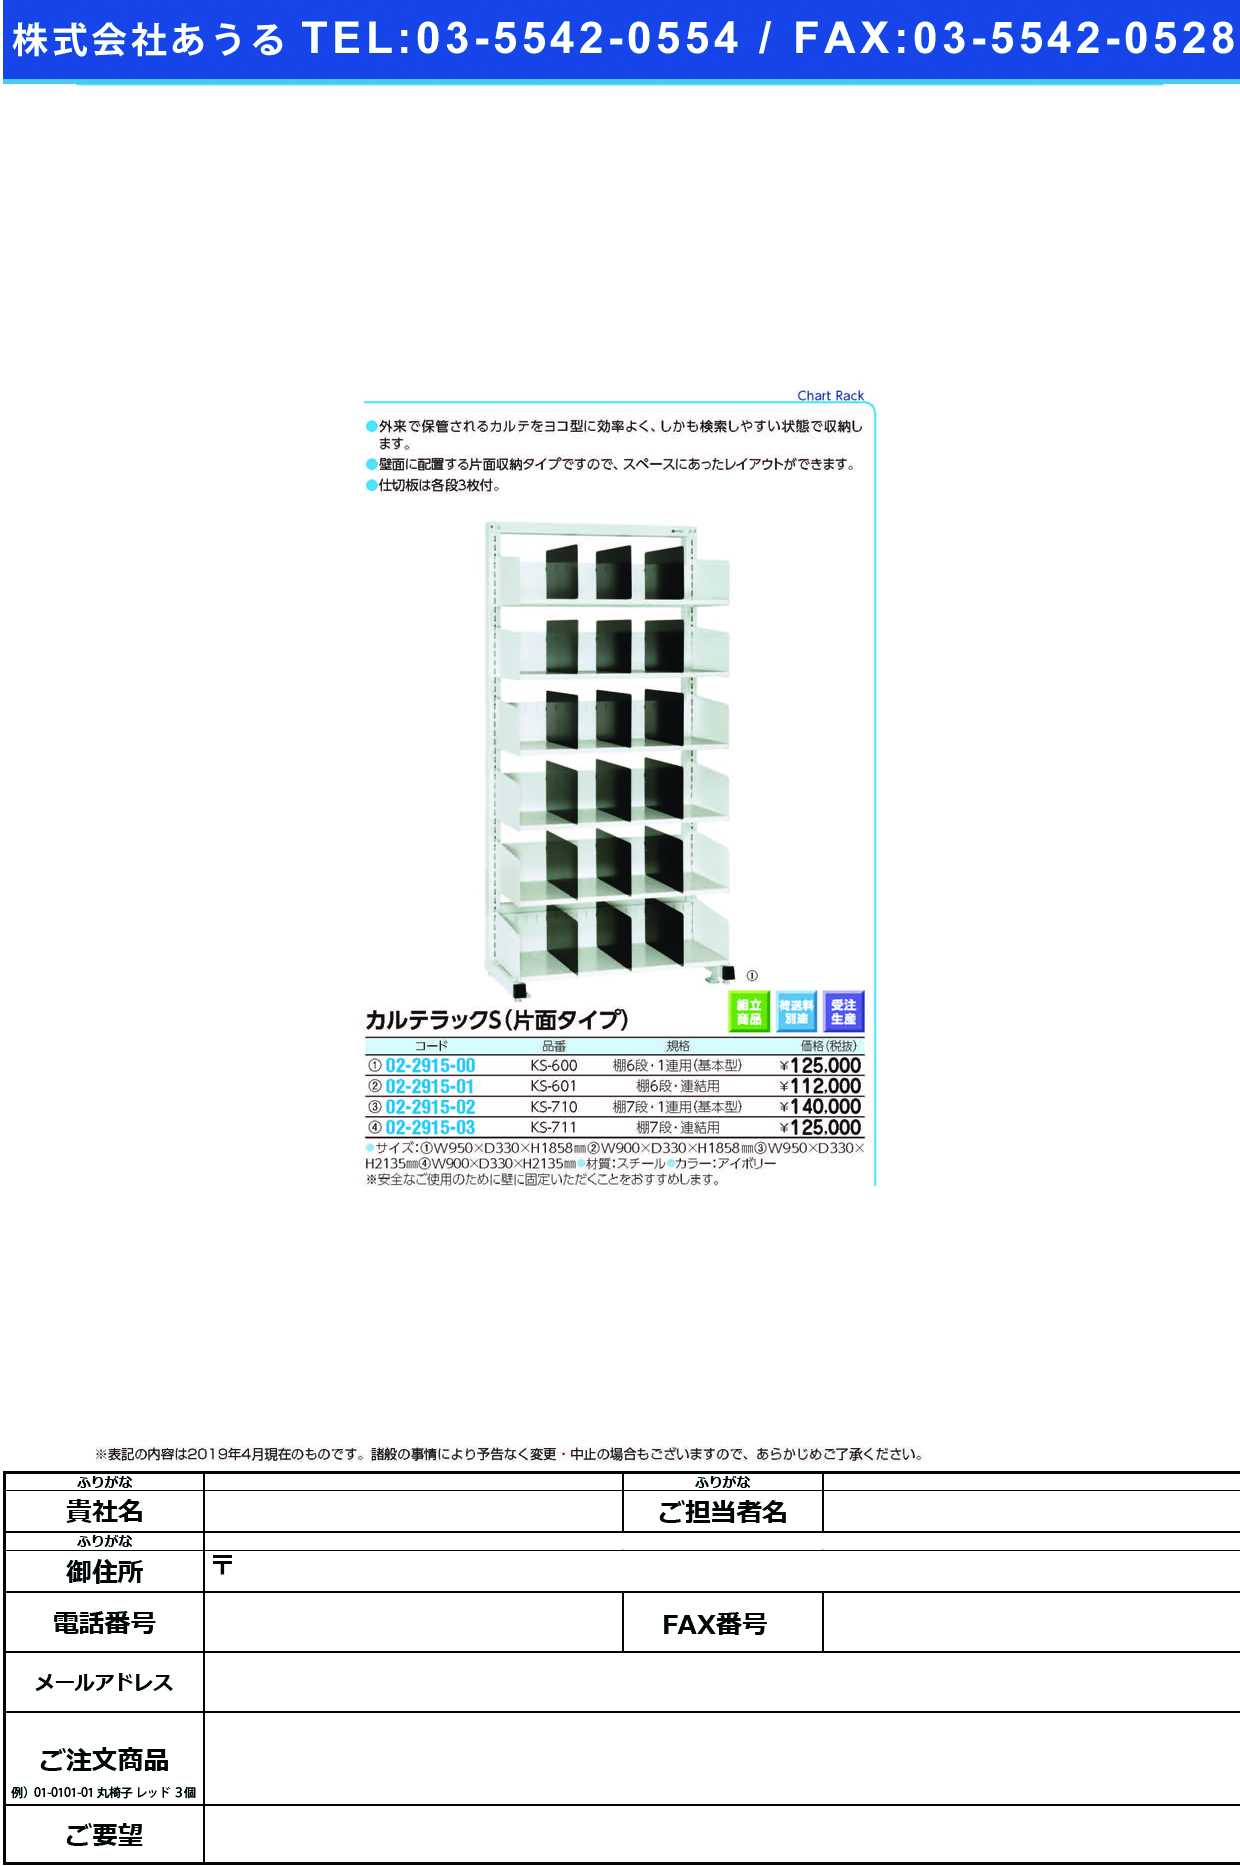 (02-2915-01)カルテラックＳ（片面型） KS-601(6ﾀﾞﾝ･ﾚﾝｹﾂﾖｳ) ｶﾙﾃﾗｯｸS(ｶﾀﾒﾝｶﾞﾀ)(ケルン)【1台単位】【2019年カタログ商品】